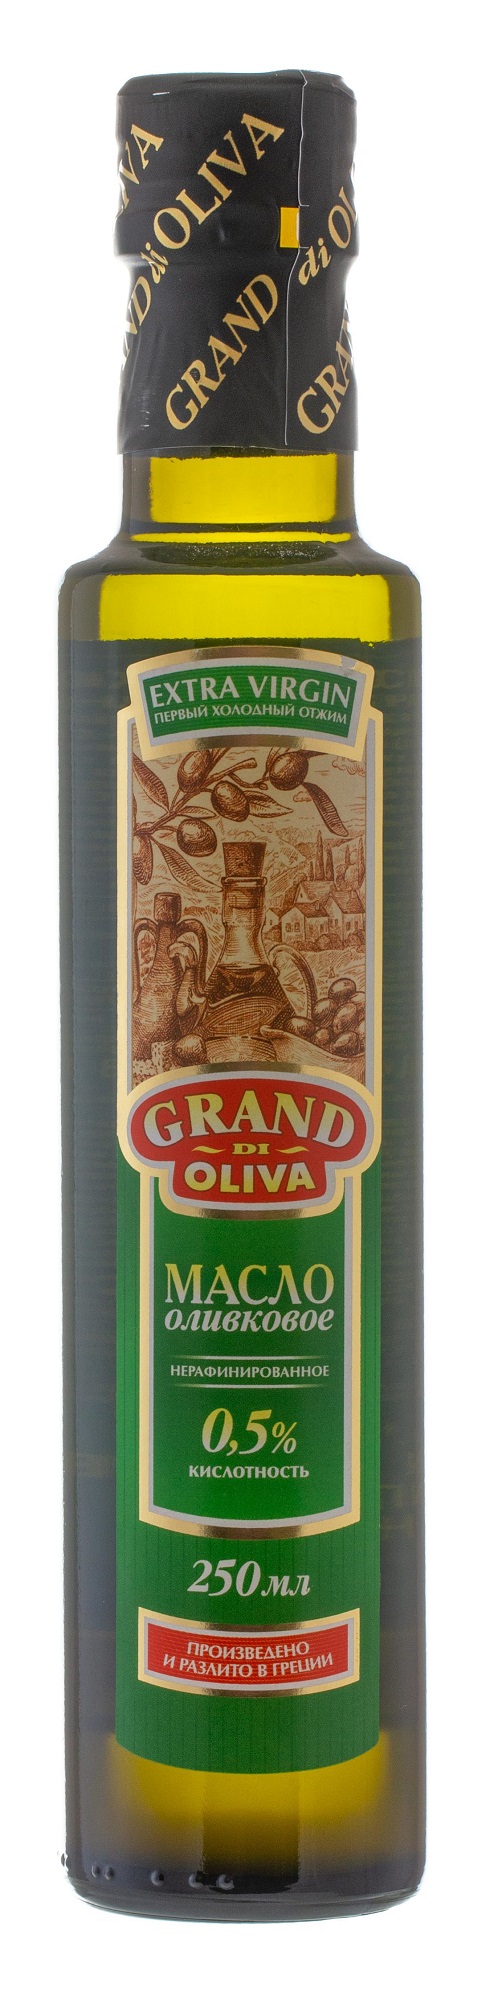 Оливковое масло Grand di Oliva Extra Virgin нерафинированное 250 мл